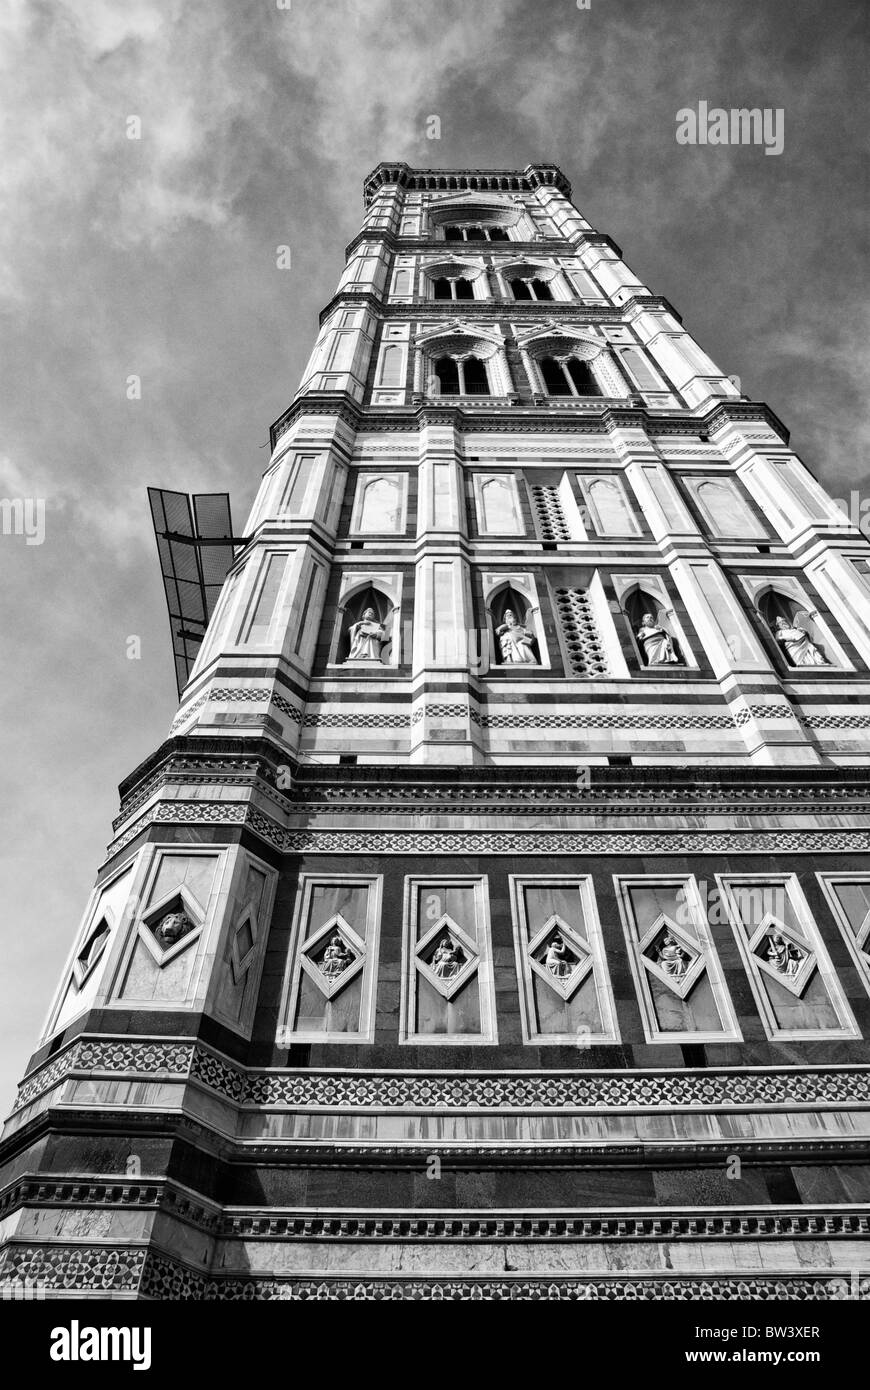 Détail architectural de la Piazza del Duomo à Florence, Italie Banque D'Images